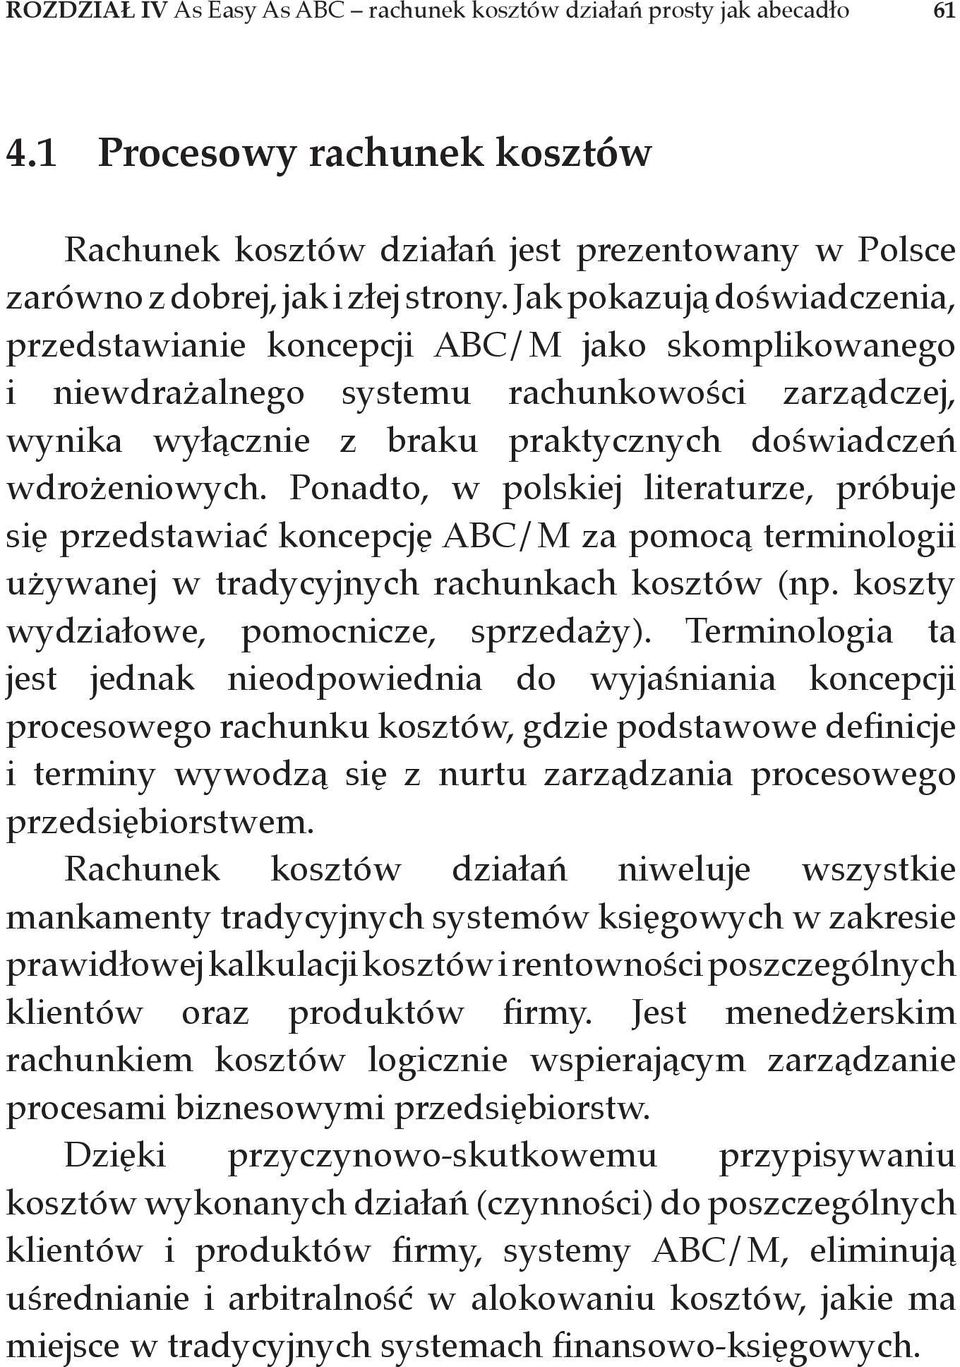 Ponadto, w polskiej literaturze, próbuje się przedstawiać koncepcję ABC/M za pomocą terminologii używanej w tradycyjnych rachunkach kosztów (np. koszty wydziałowe, pomocnicze, sprzedaży).